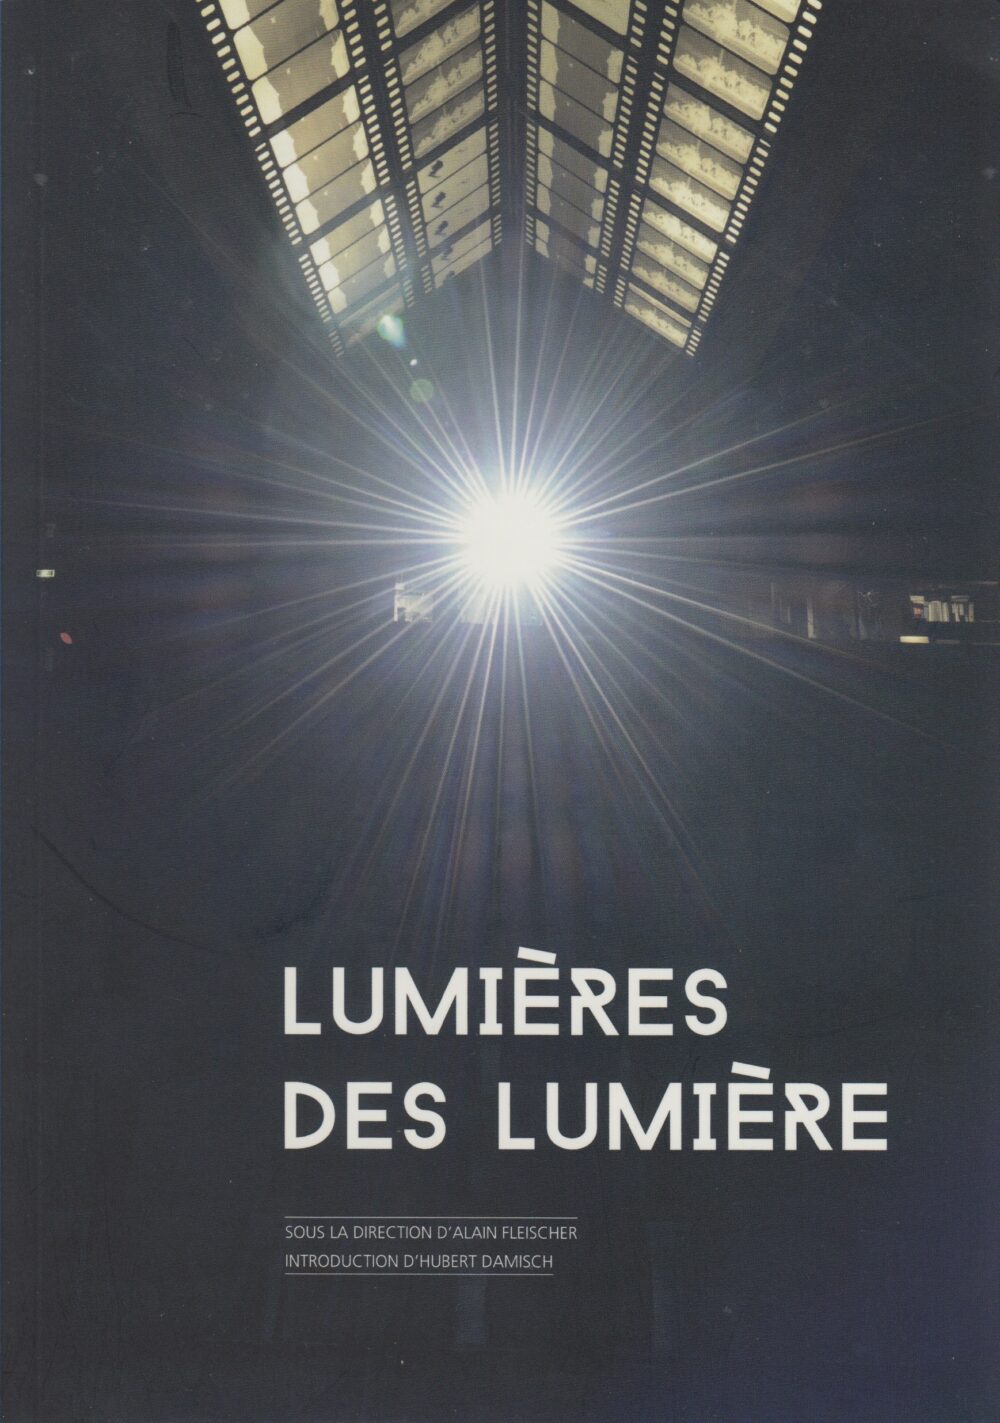 Éclairs ou présence du passé dans les images en mouvement, dans Lumières des Lumière (dir. Alain Fleischer), 2015.